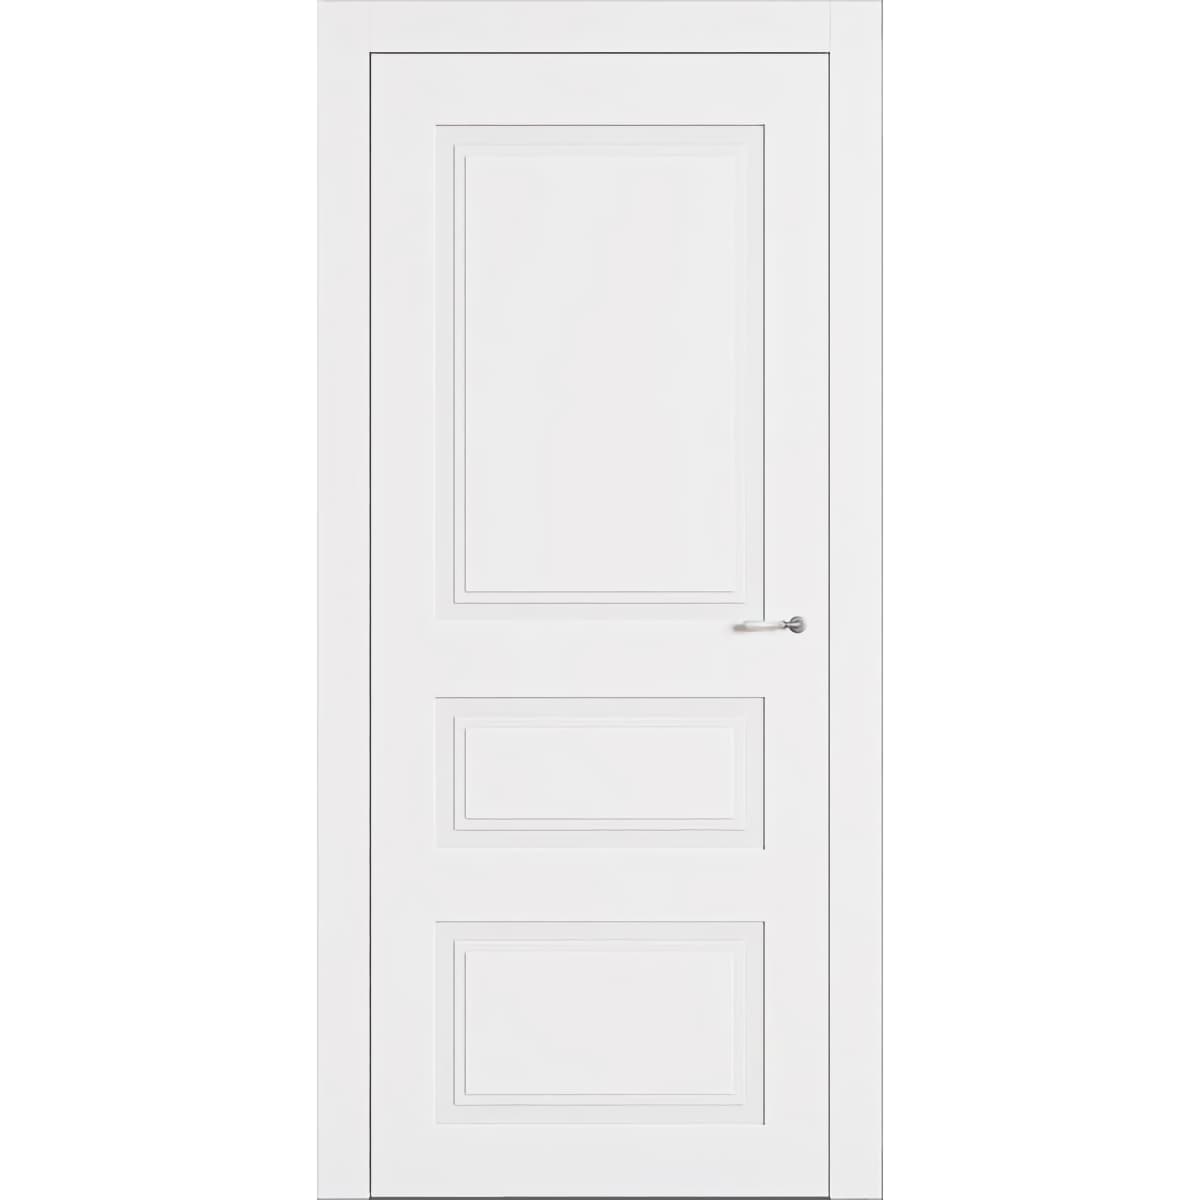 Двери межкомнатные филенчатые белые Minimal London